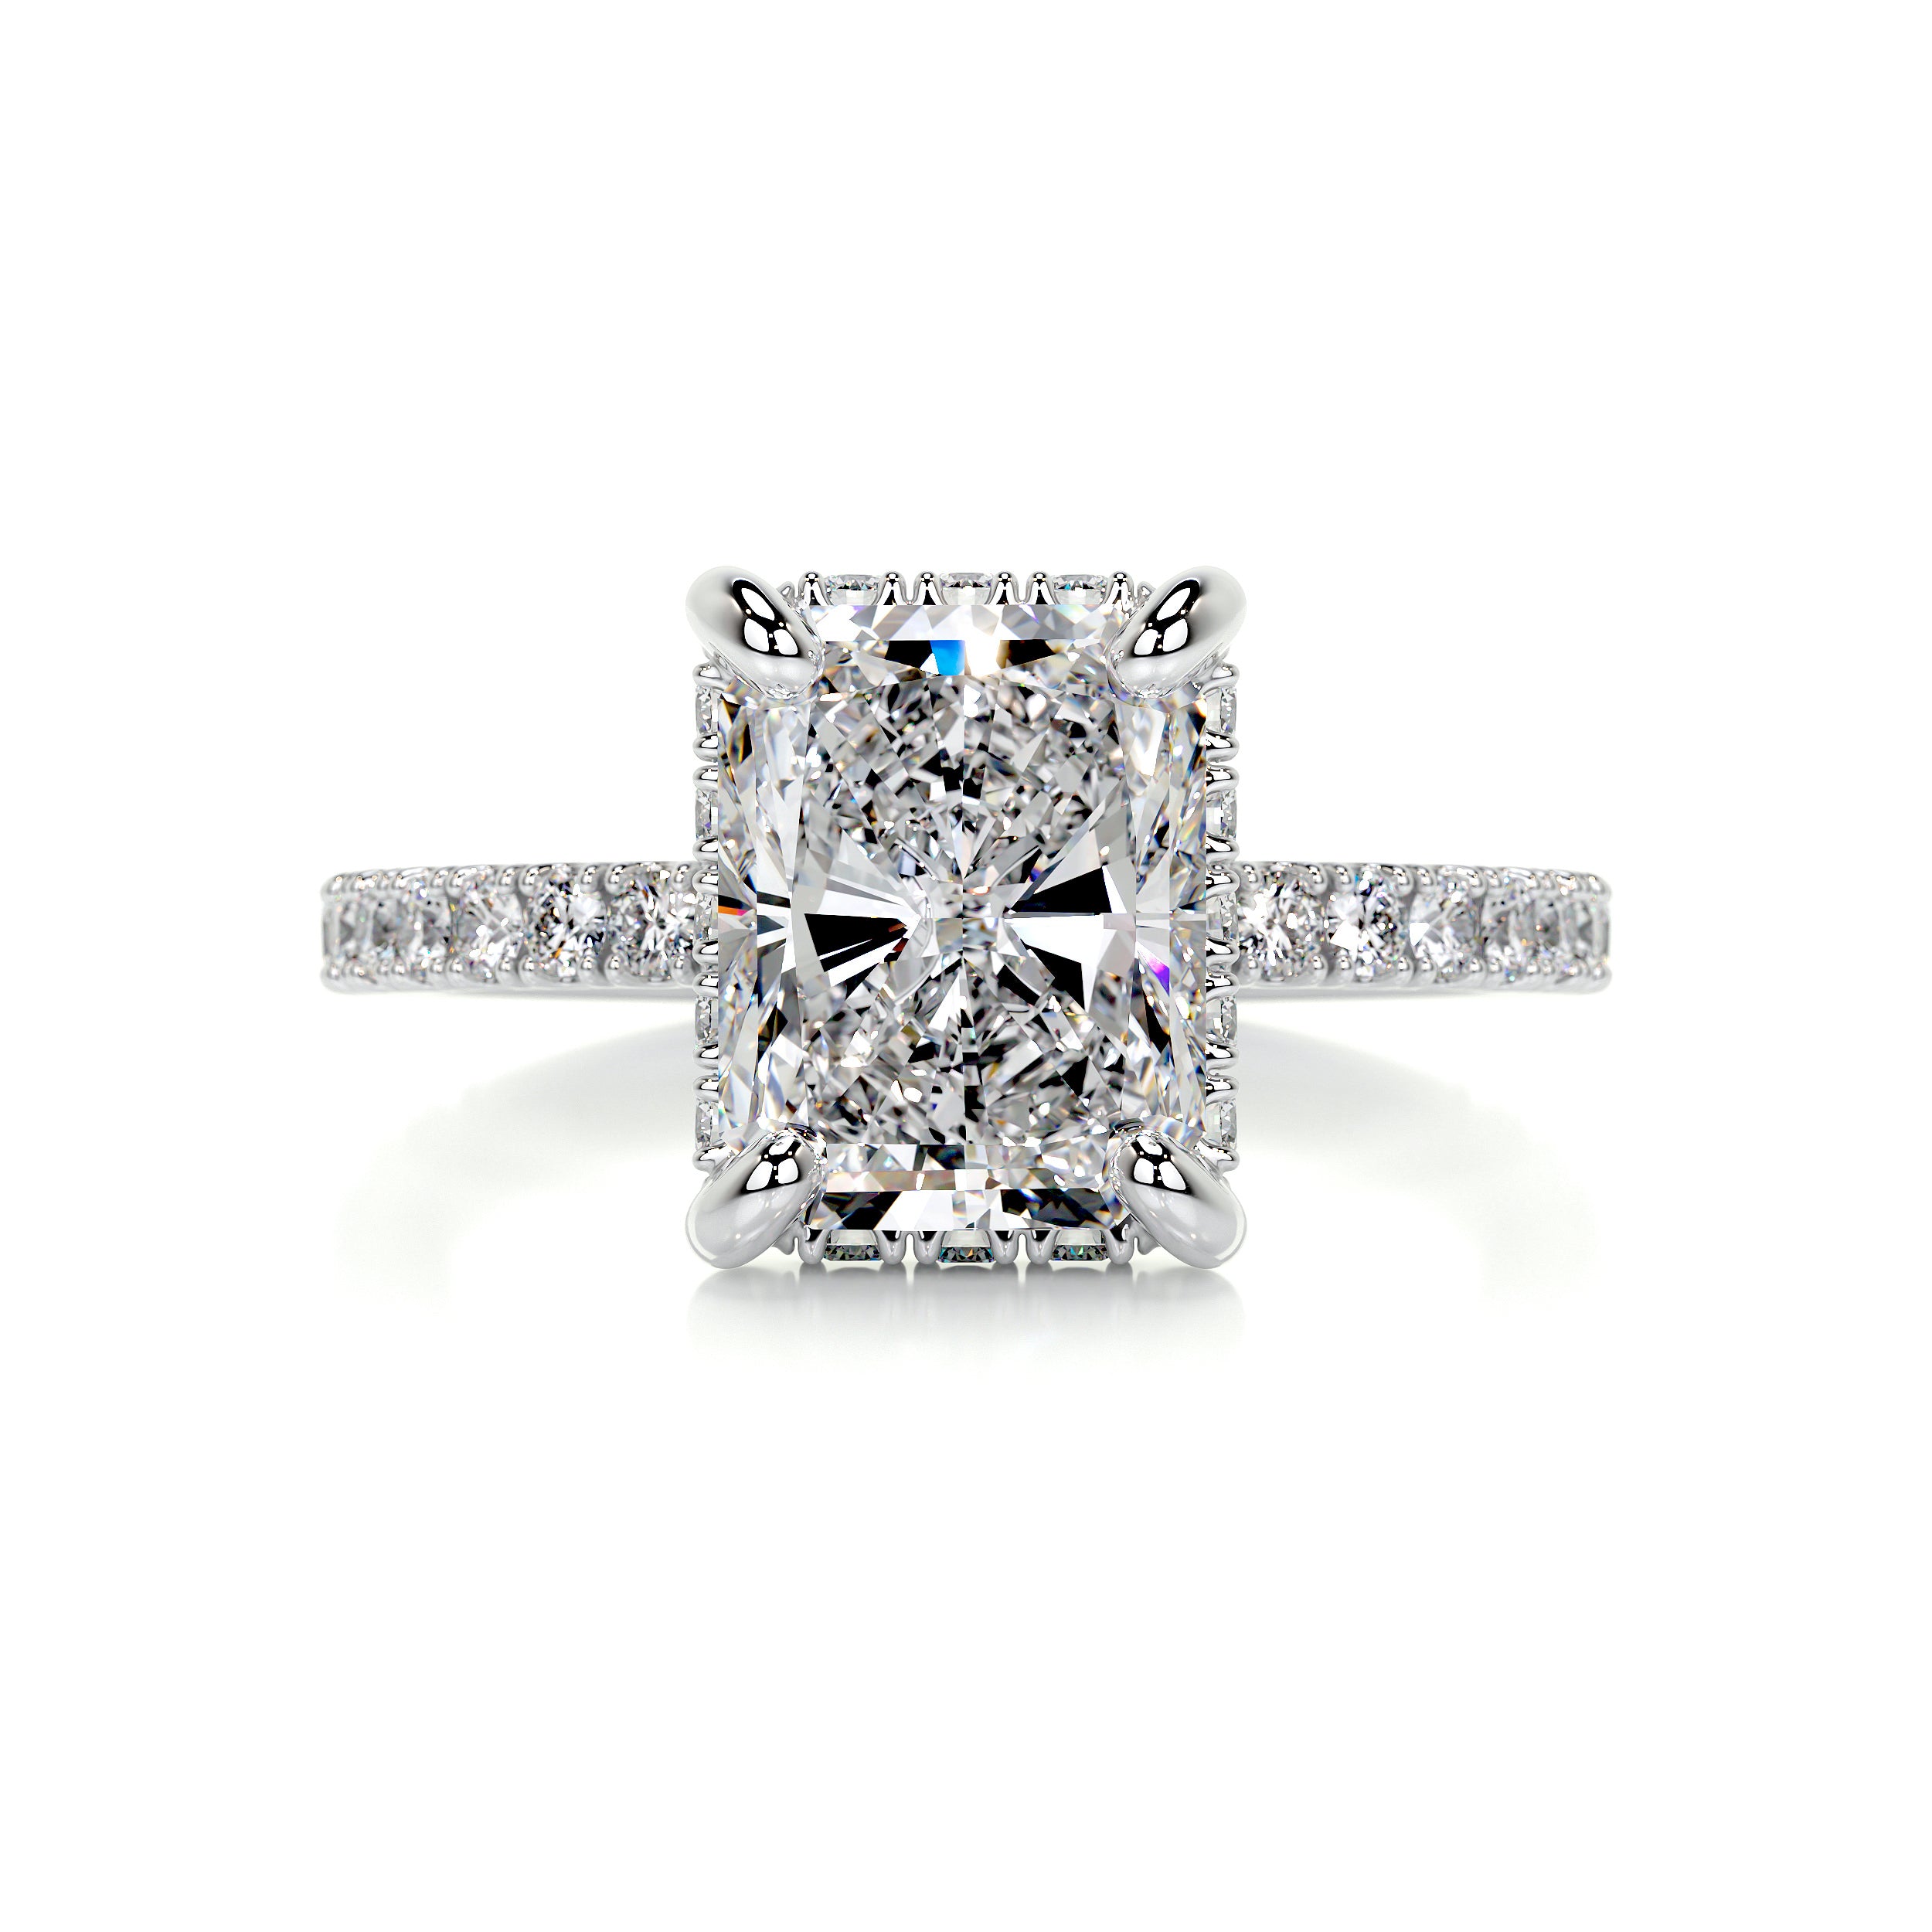 Luna Diamond Engagement Ring   (2.5 Carat) -14K White Gold